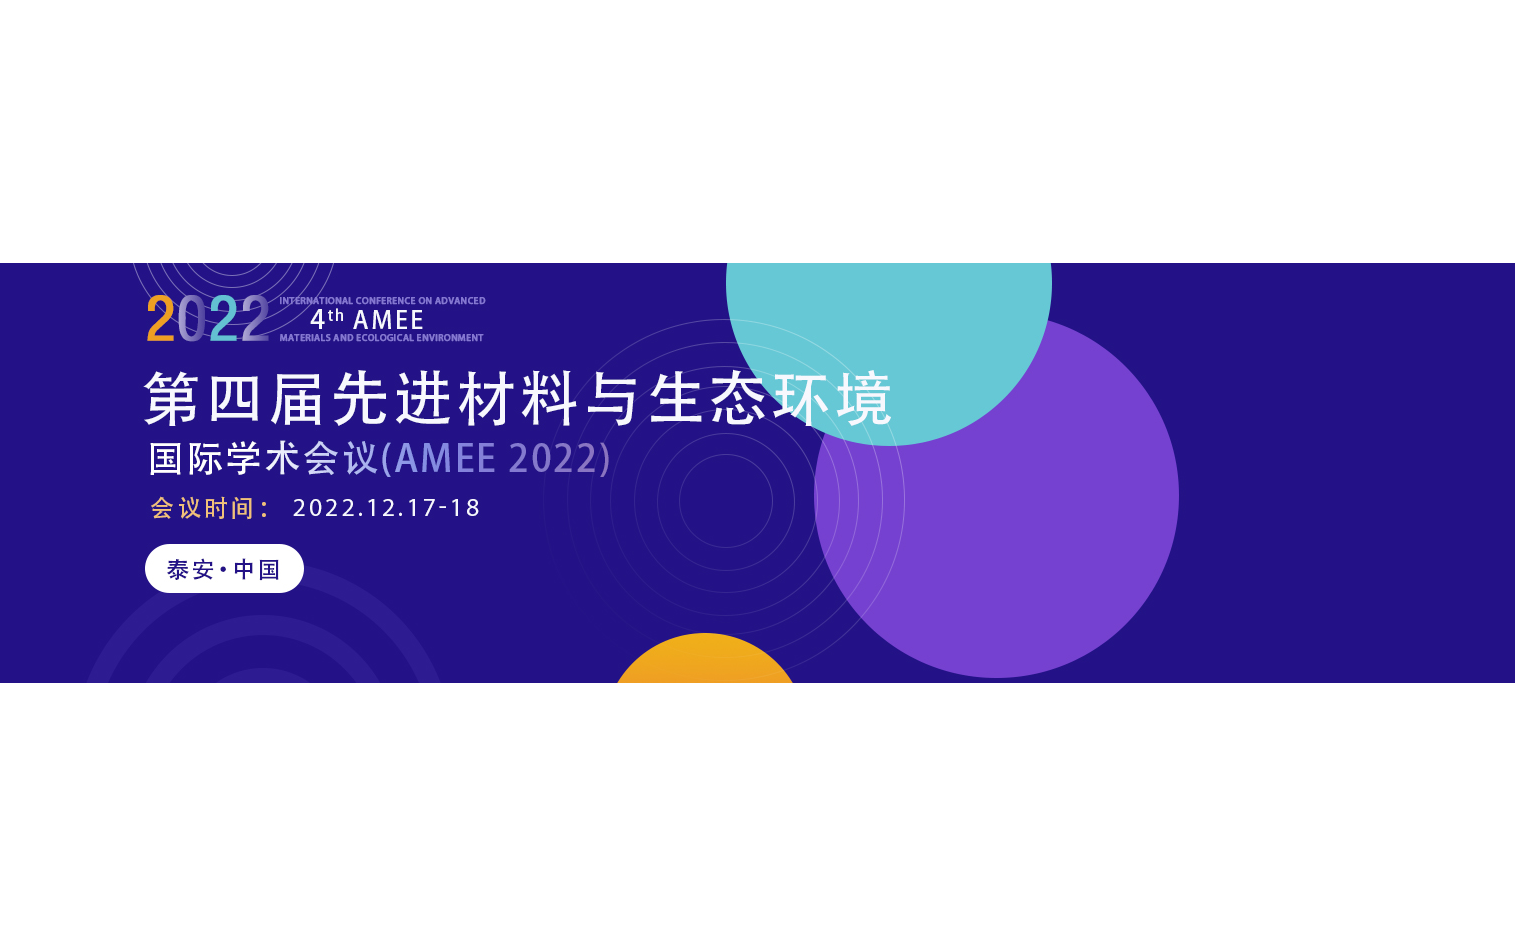 2022年第四届先进材料与生态环境国际会议 (AMEE 2022)